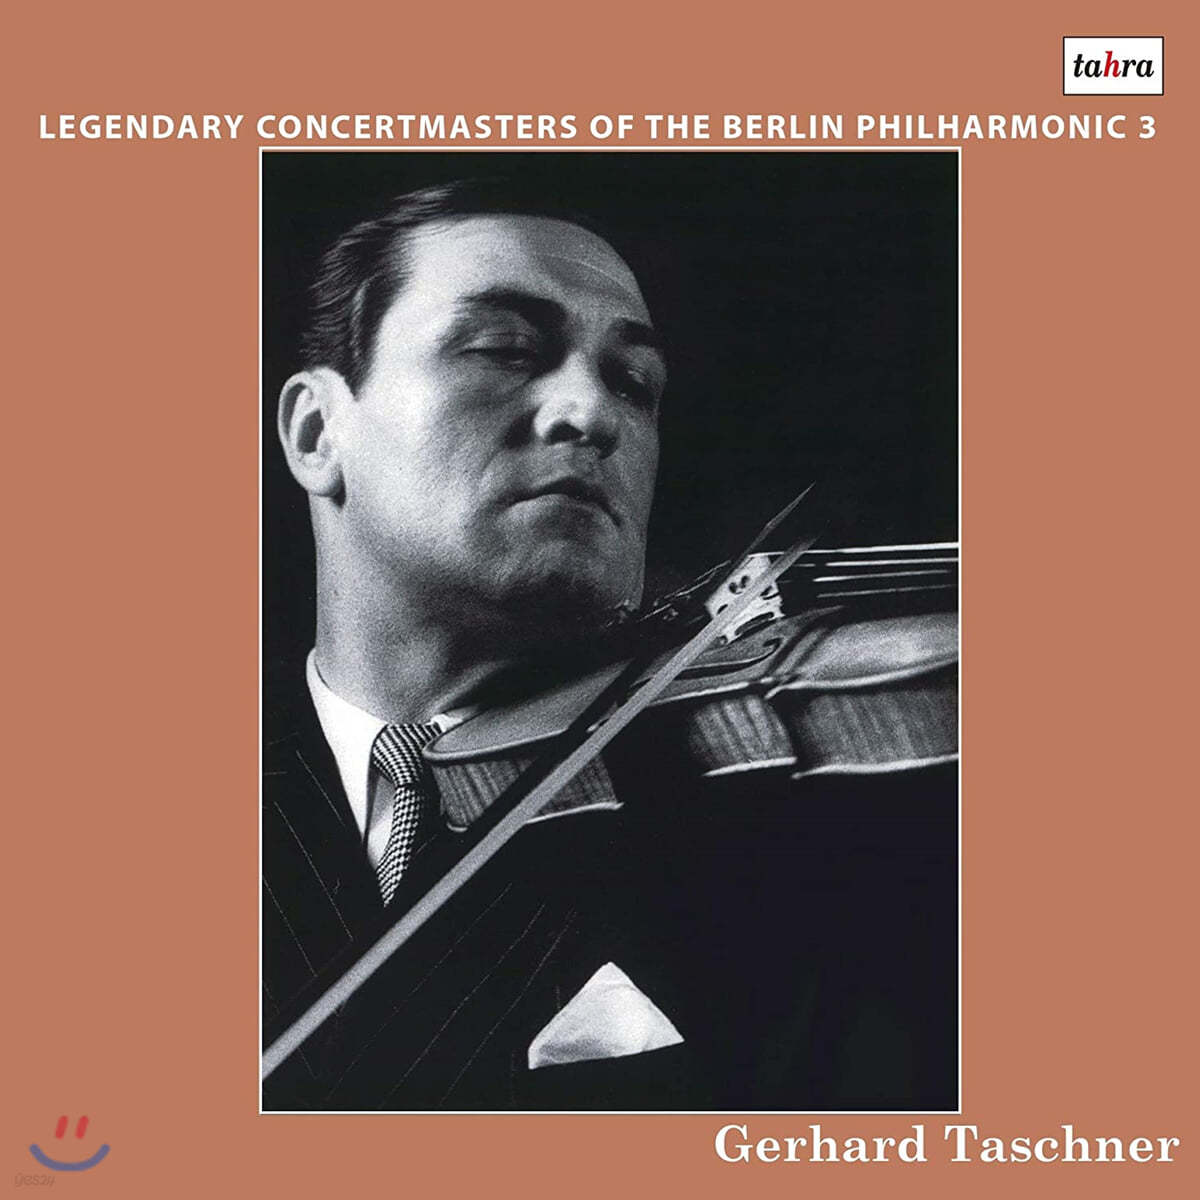 베를린 필의 전설의 악장들 3집 - 게르하르트 타슈너 (Legendary Concertmasters Of the Berlin Philharmonice 3 - Gerhard Taschner) [2LP]